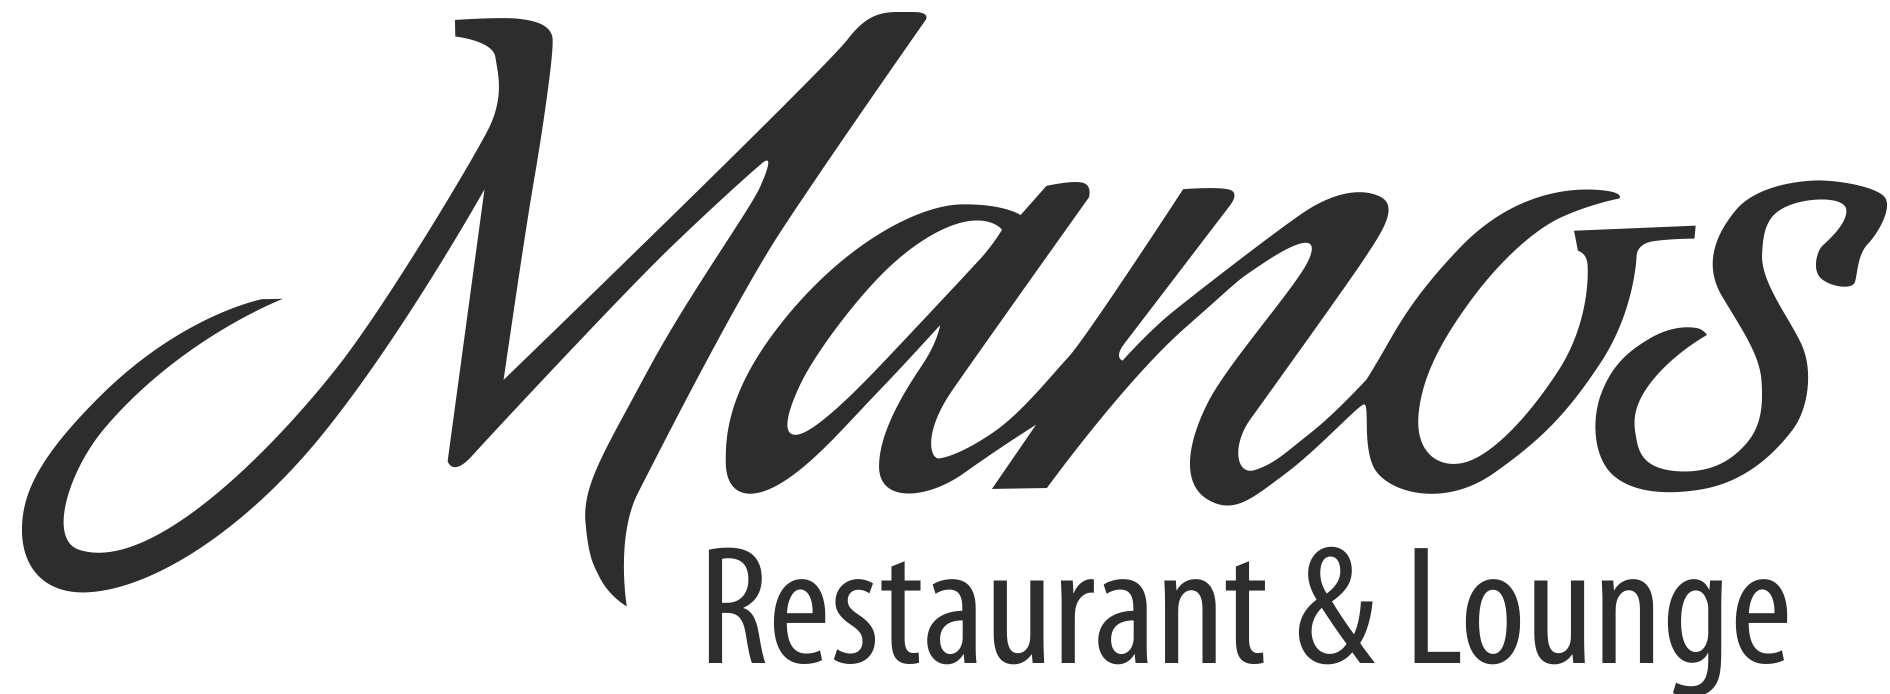 Mano's